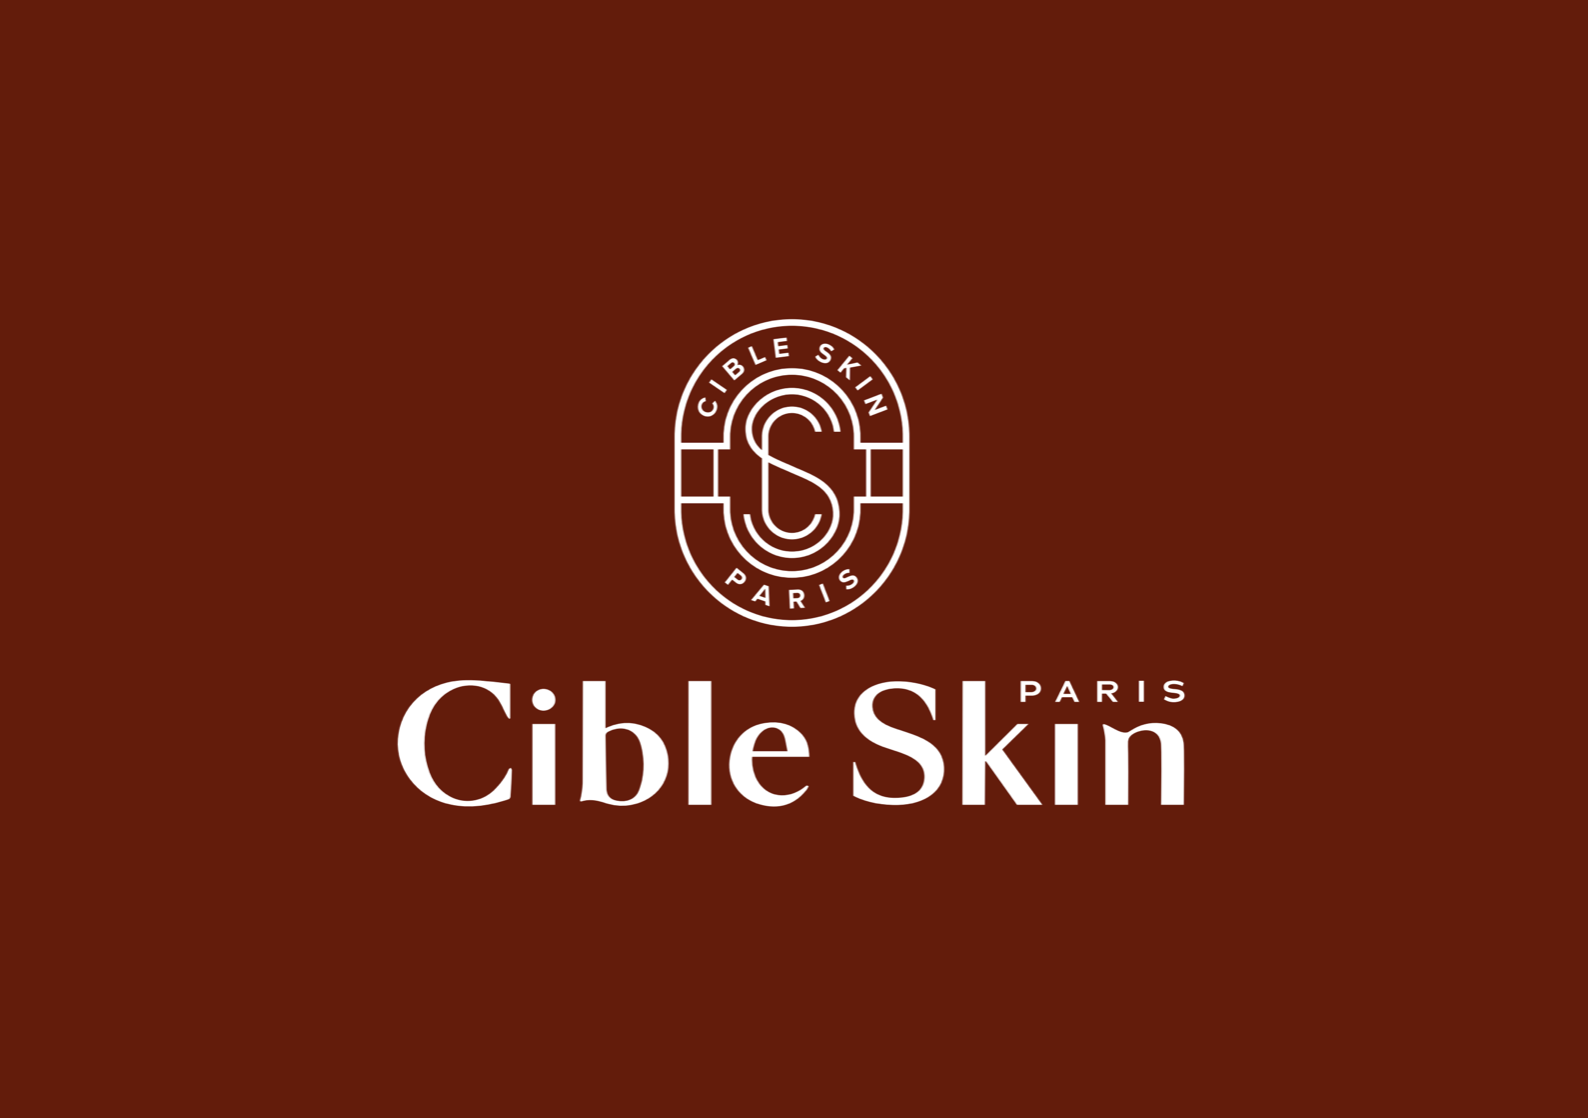 法国医学护肤品牌Cible Skin全新医学护肤旗舰店亮相巴黎黄金三角